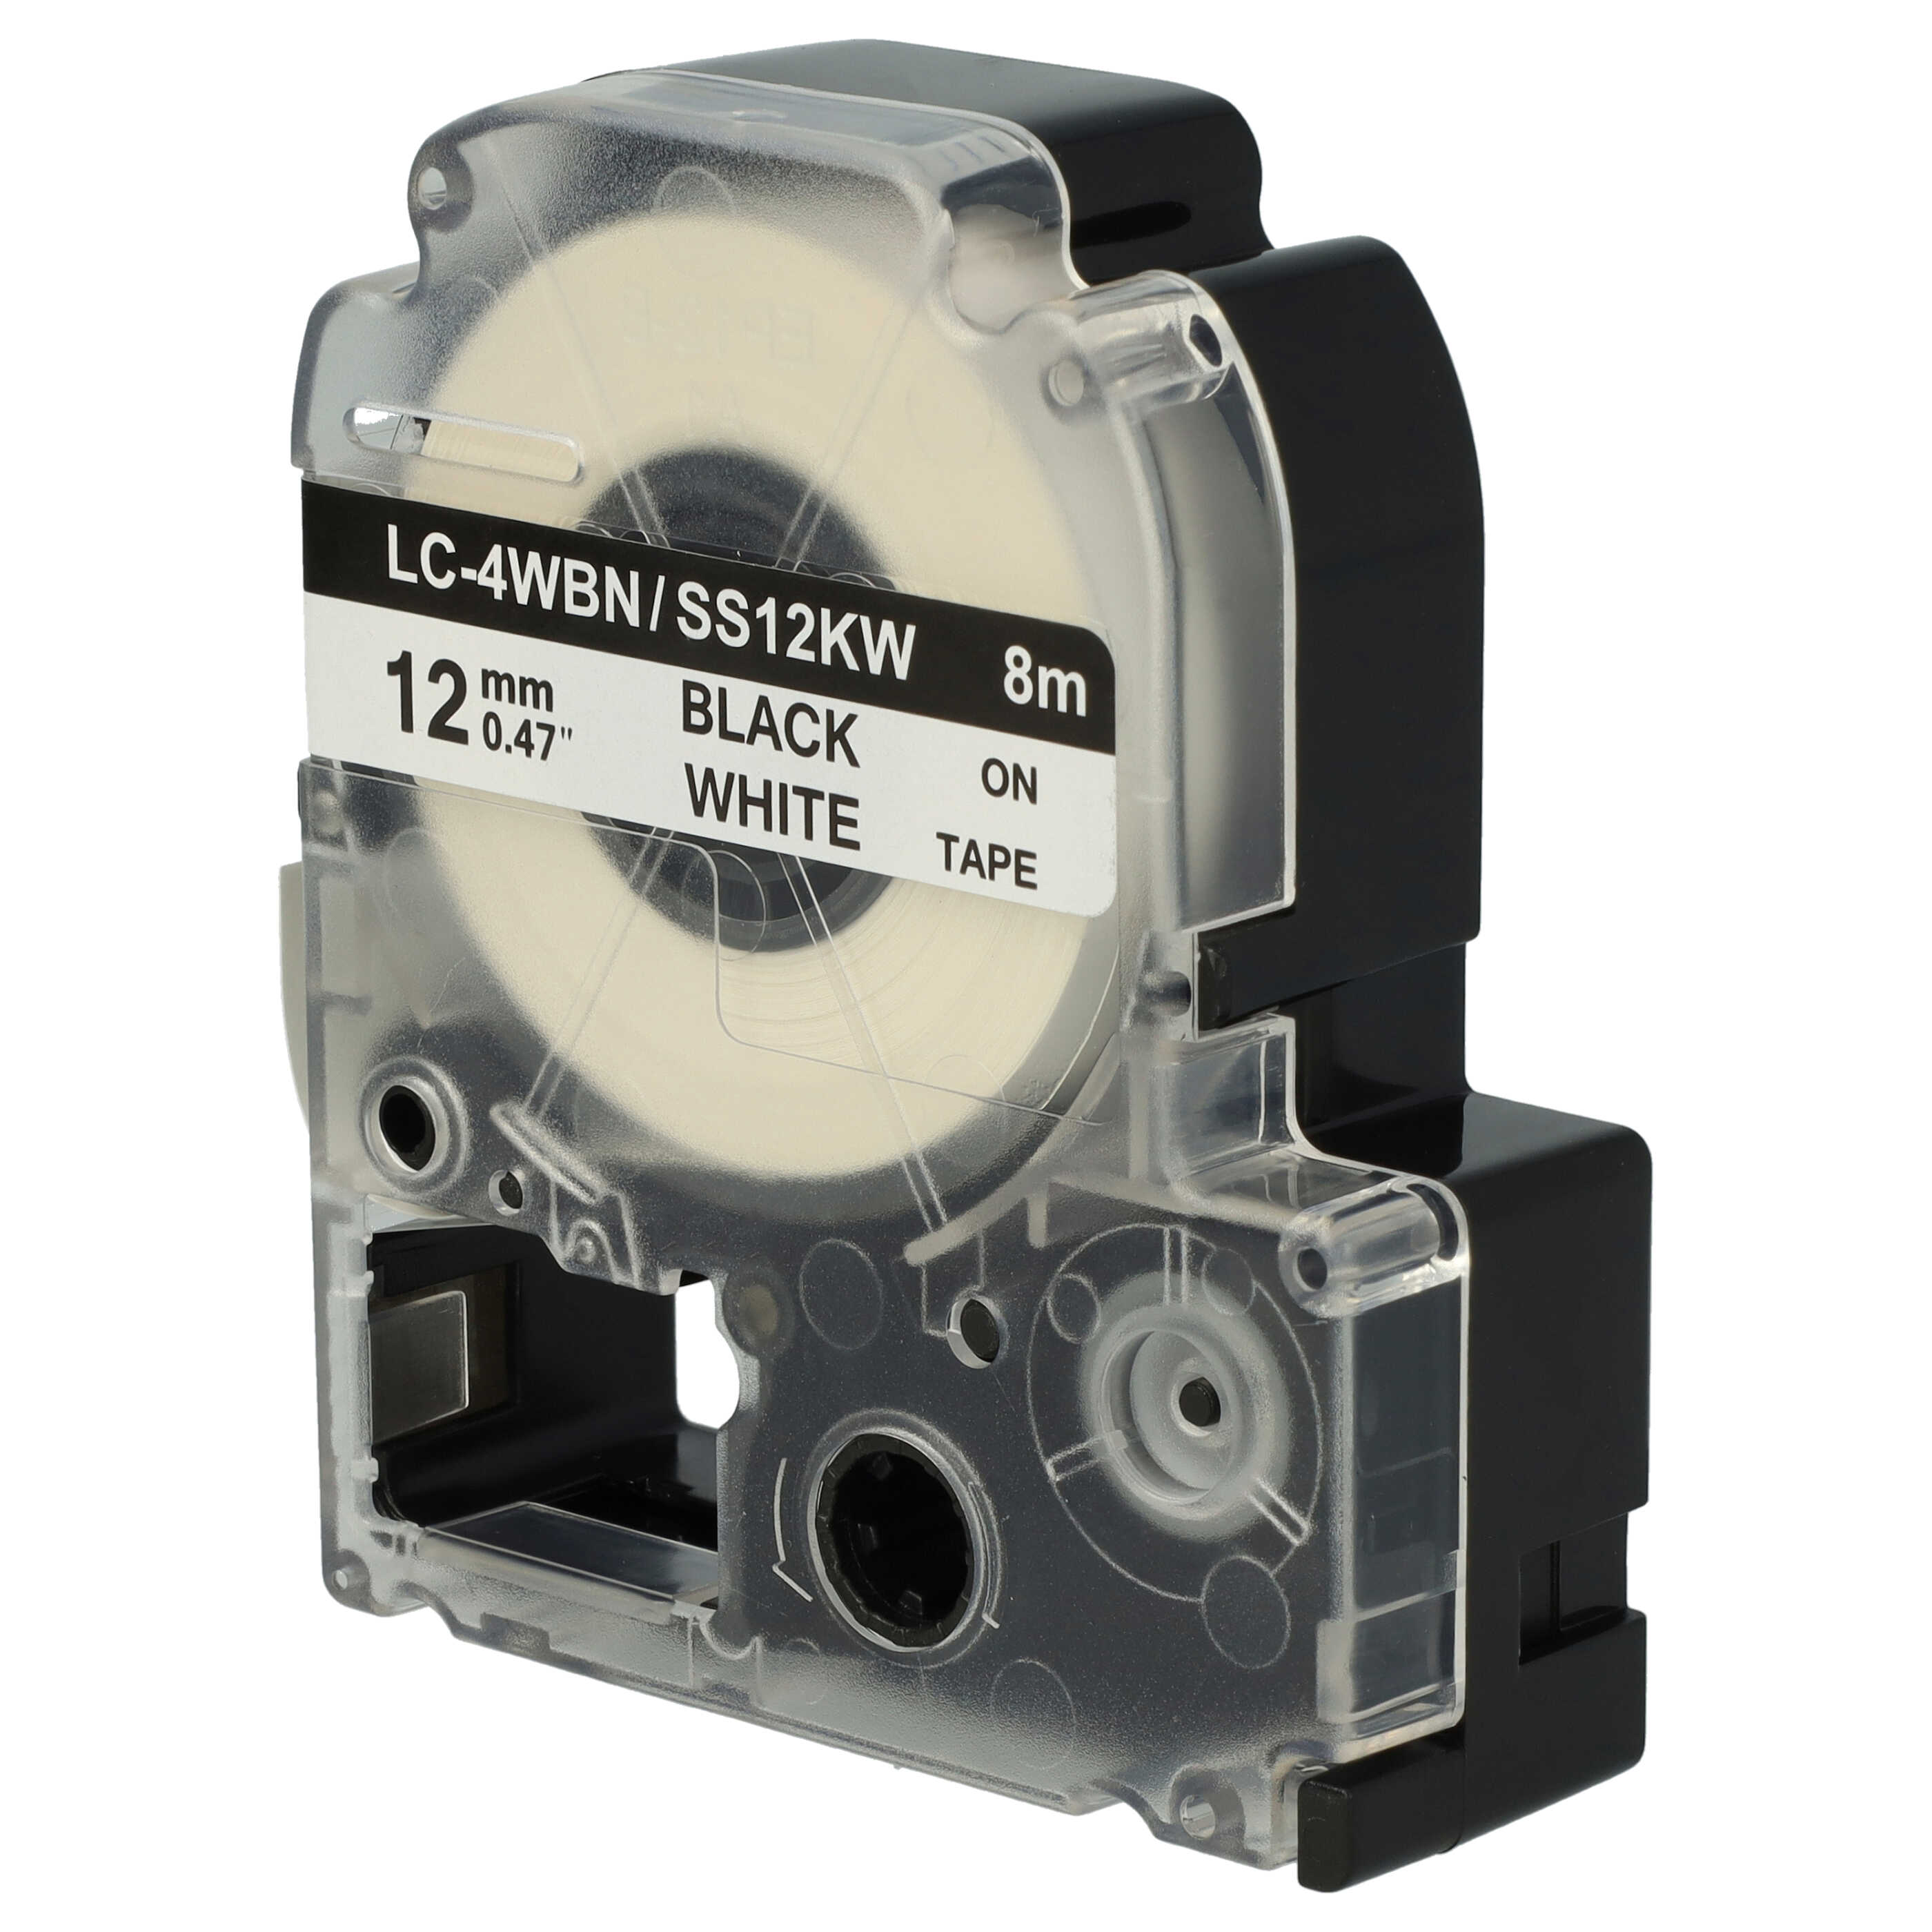 Cassetta nastro sostituisce Epson LC-4WBN per etichettatrice Epson 12mm nero su bianco